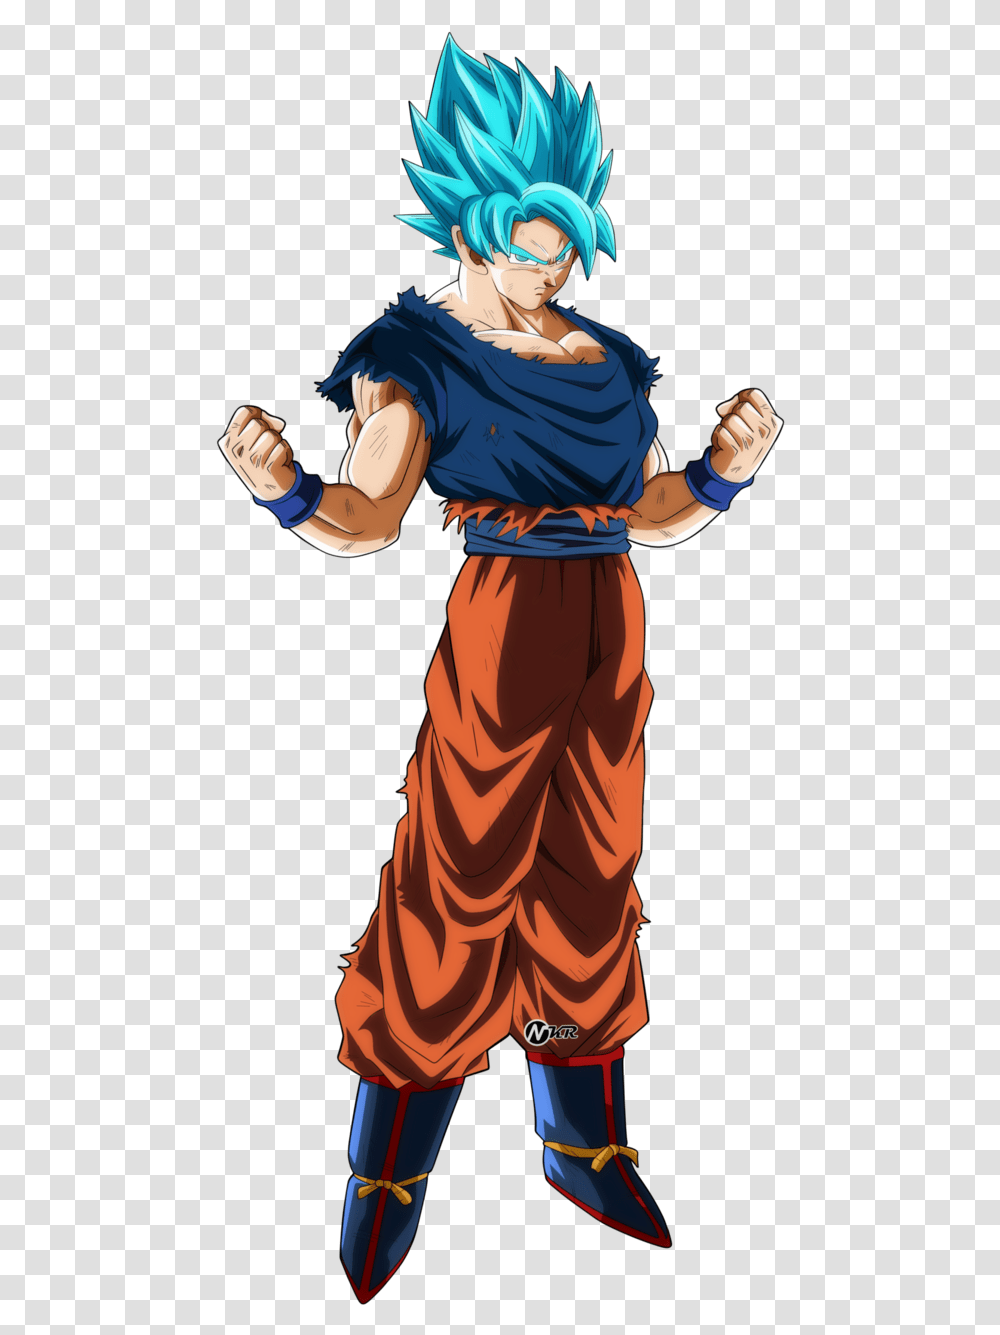 Image With Background Goku Ssj Blue Goku Ssj Blue, Person, Hand, Martial Arts, Sport Transparent Png